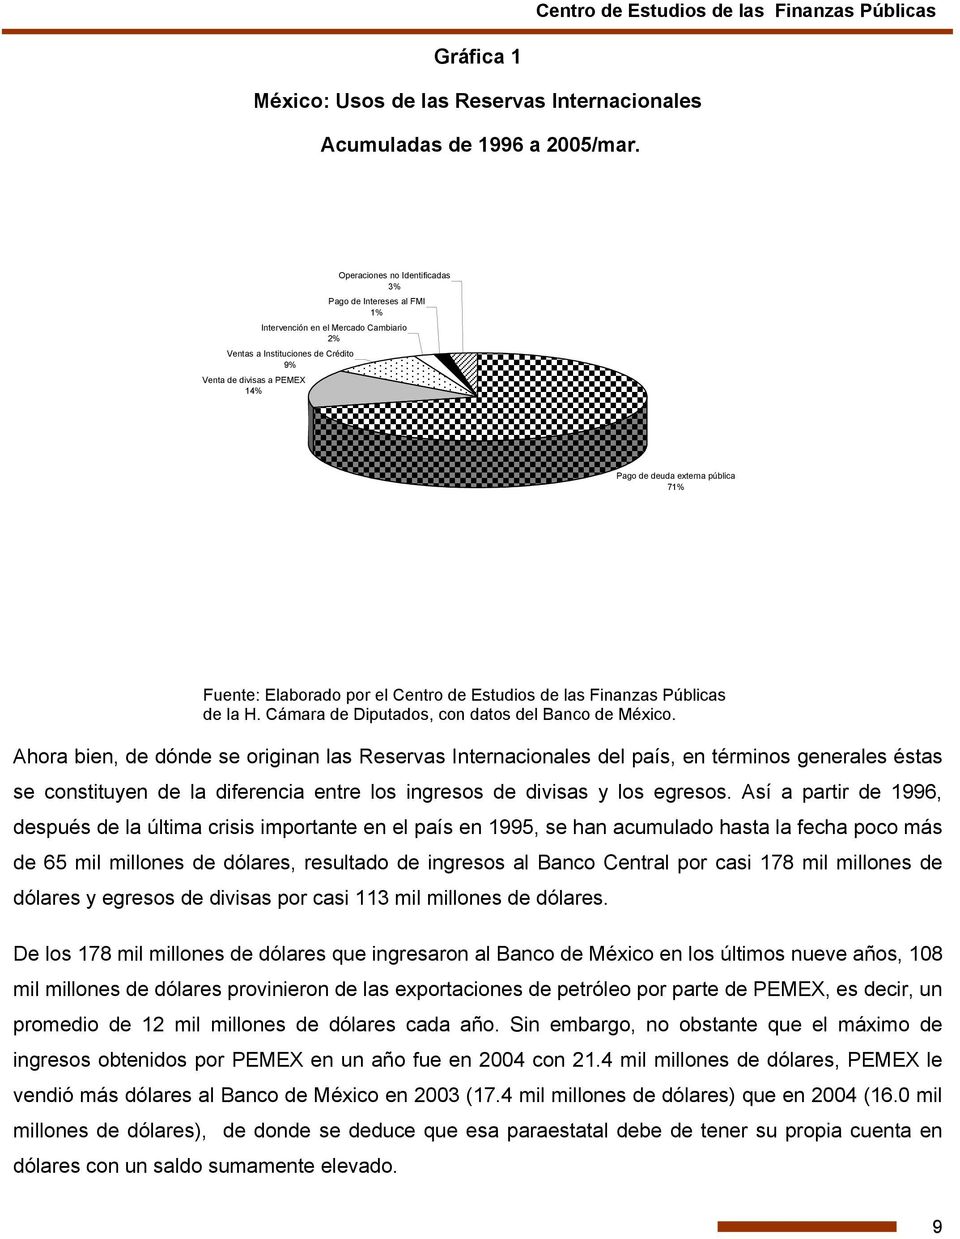 Fuente: Elaborado por el Centro de Estudios de las Finanzas Públicas de la H. Cámara de Diputados, con datos del Banco de México.